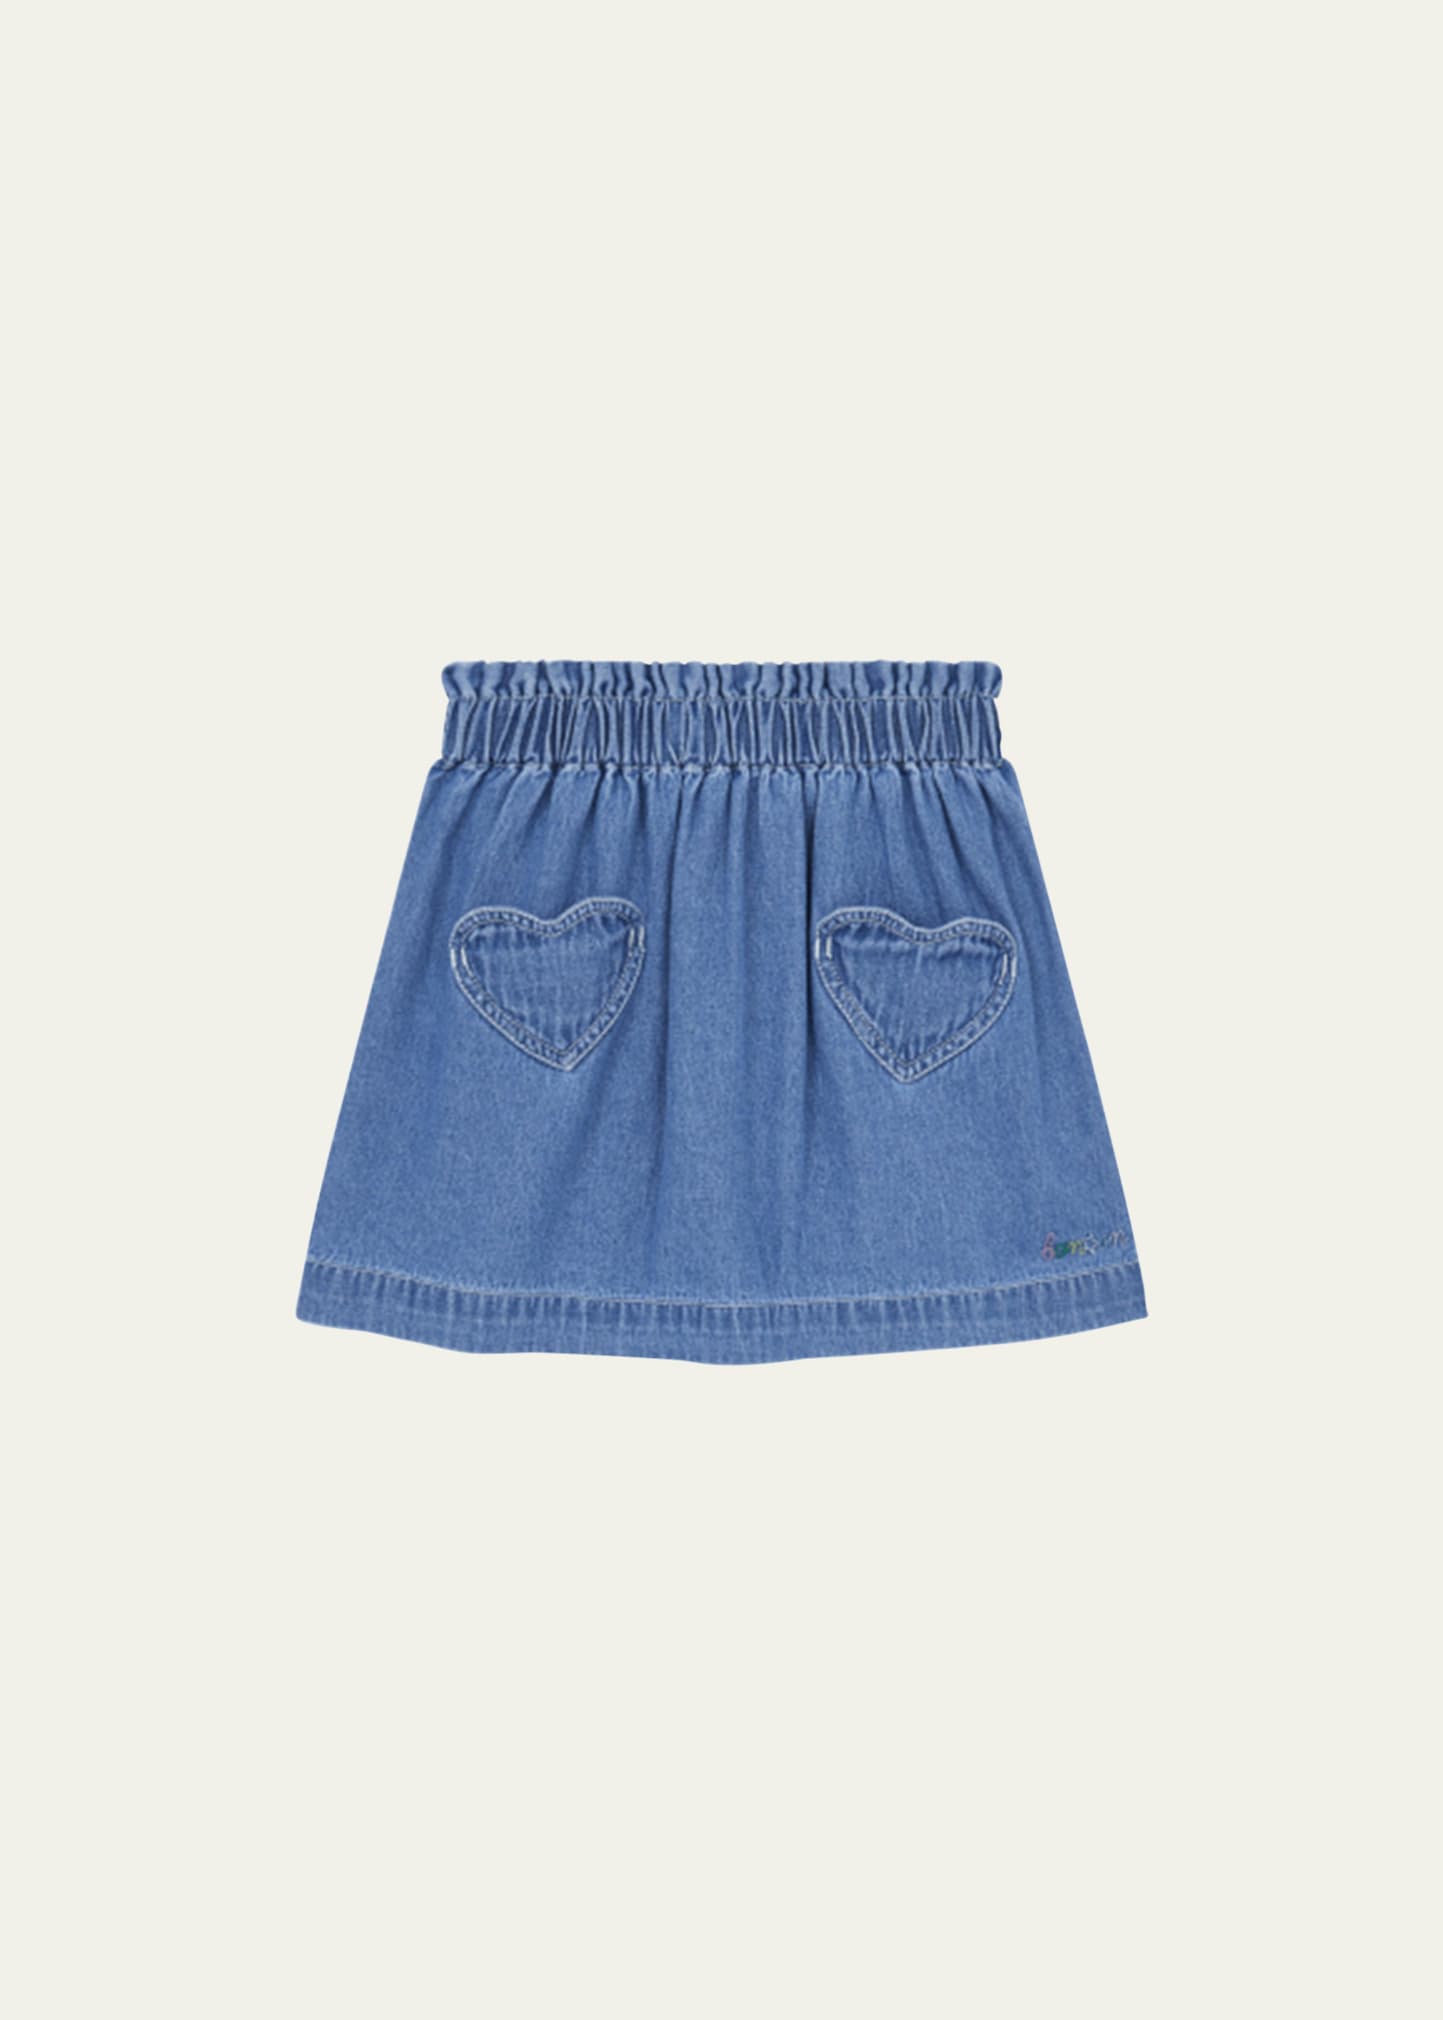 Bonton Girl's Douchka Short Denim Skirt, Size 4-12